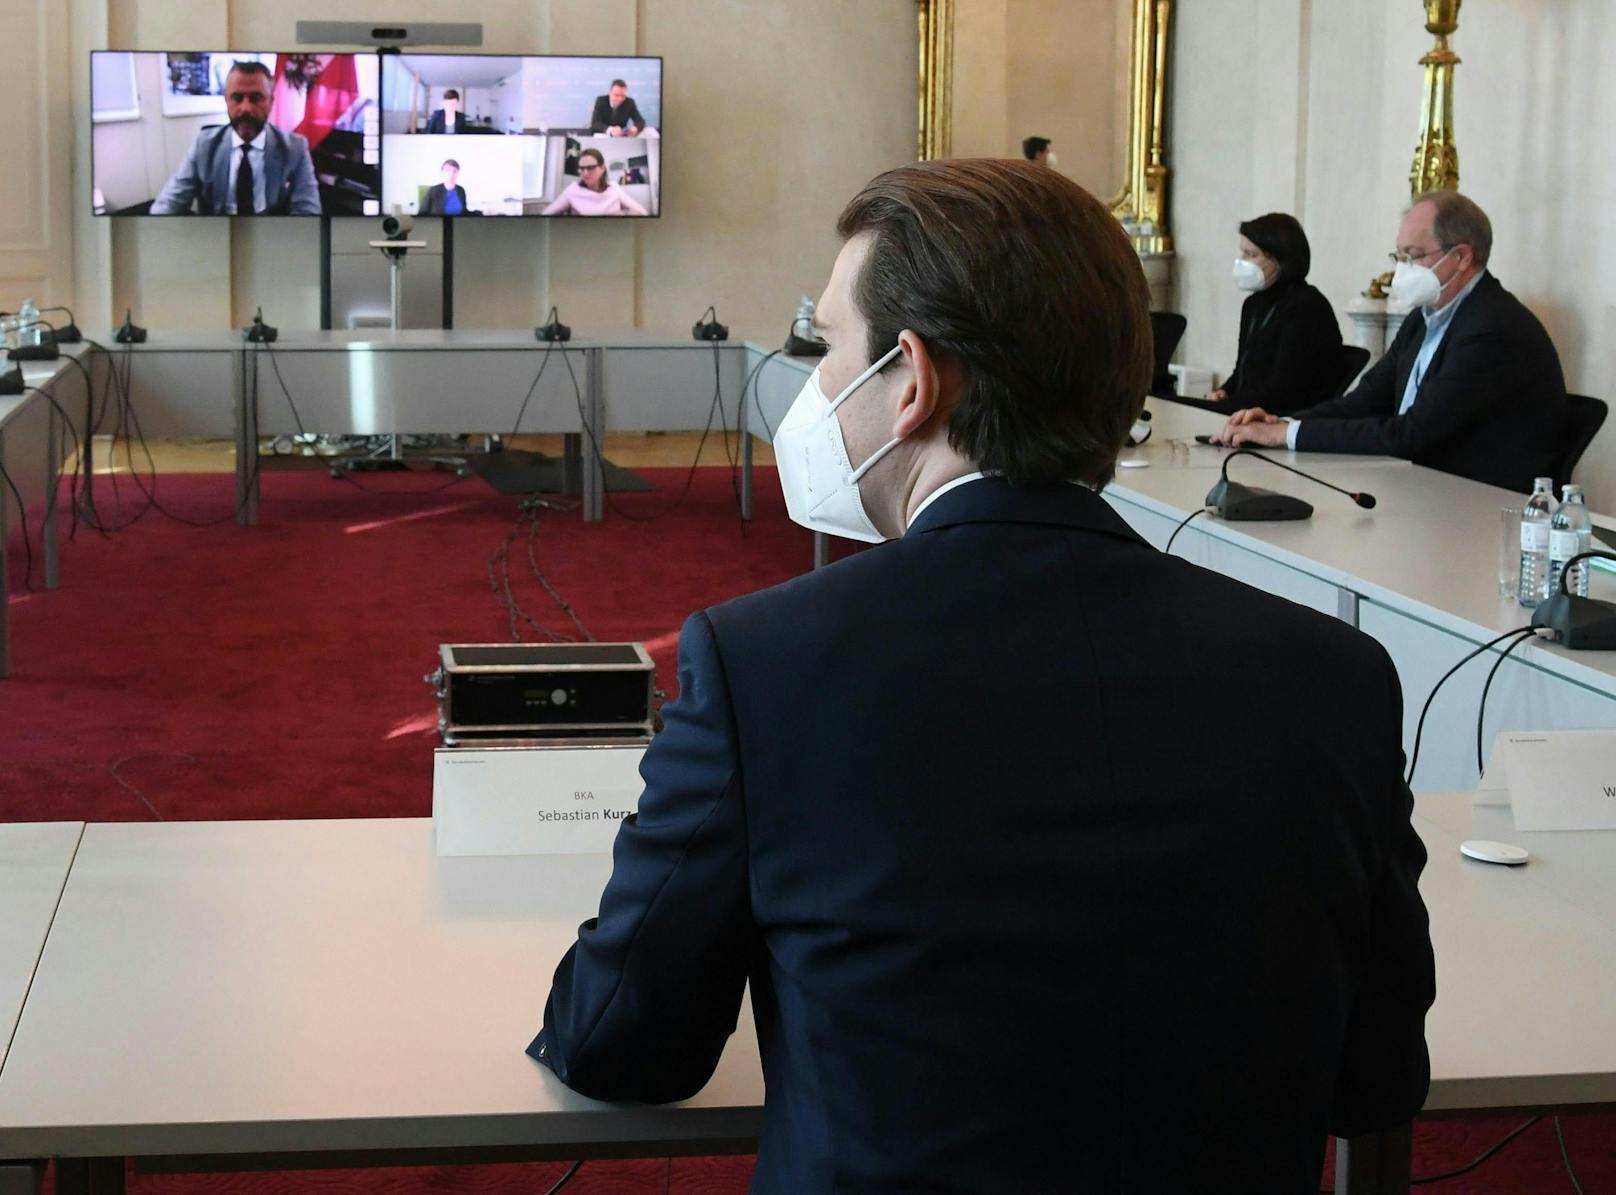 Vizekanzler Werner Kogler (Grüne), Bundeskanzler Sebastian Kurz (ÖVP) und Gesundheitsminister Rudolf Anschober (Grüne) am 1. Februar, anlässlich eines Treffens der Bundesregierung mit den Landeshauptleuten zum Thema Lockdown.